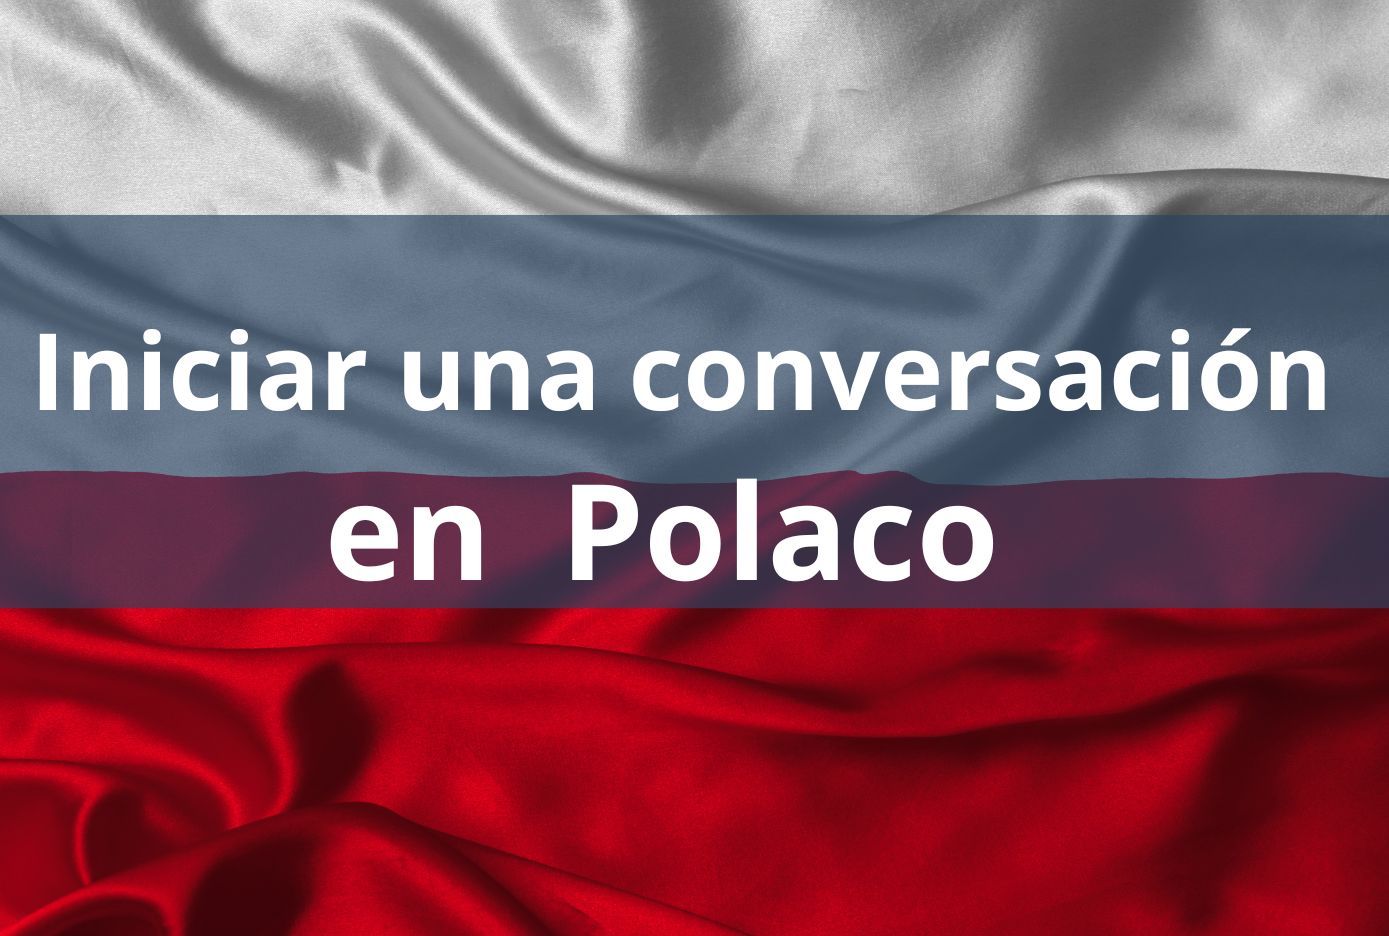 inicia una conversacion en polaco